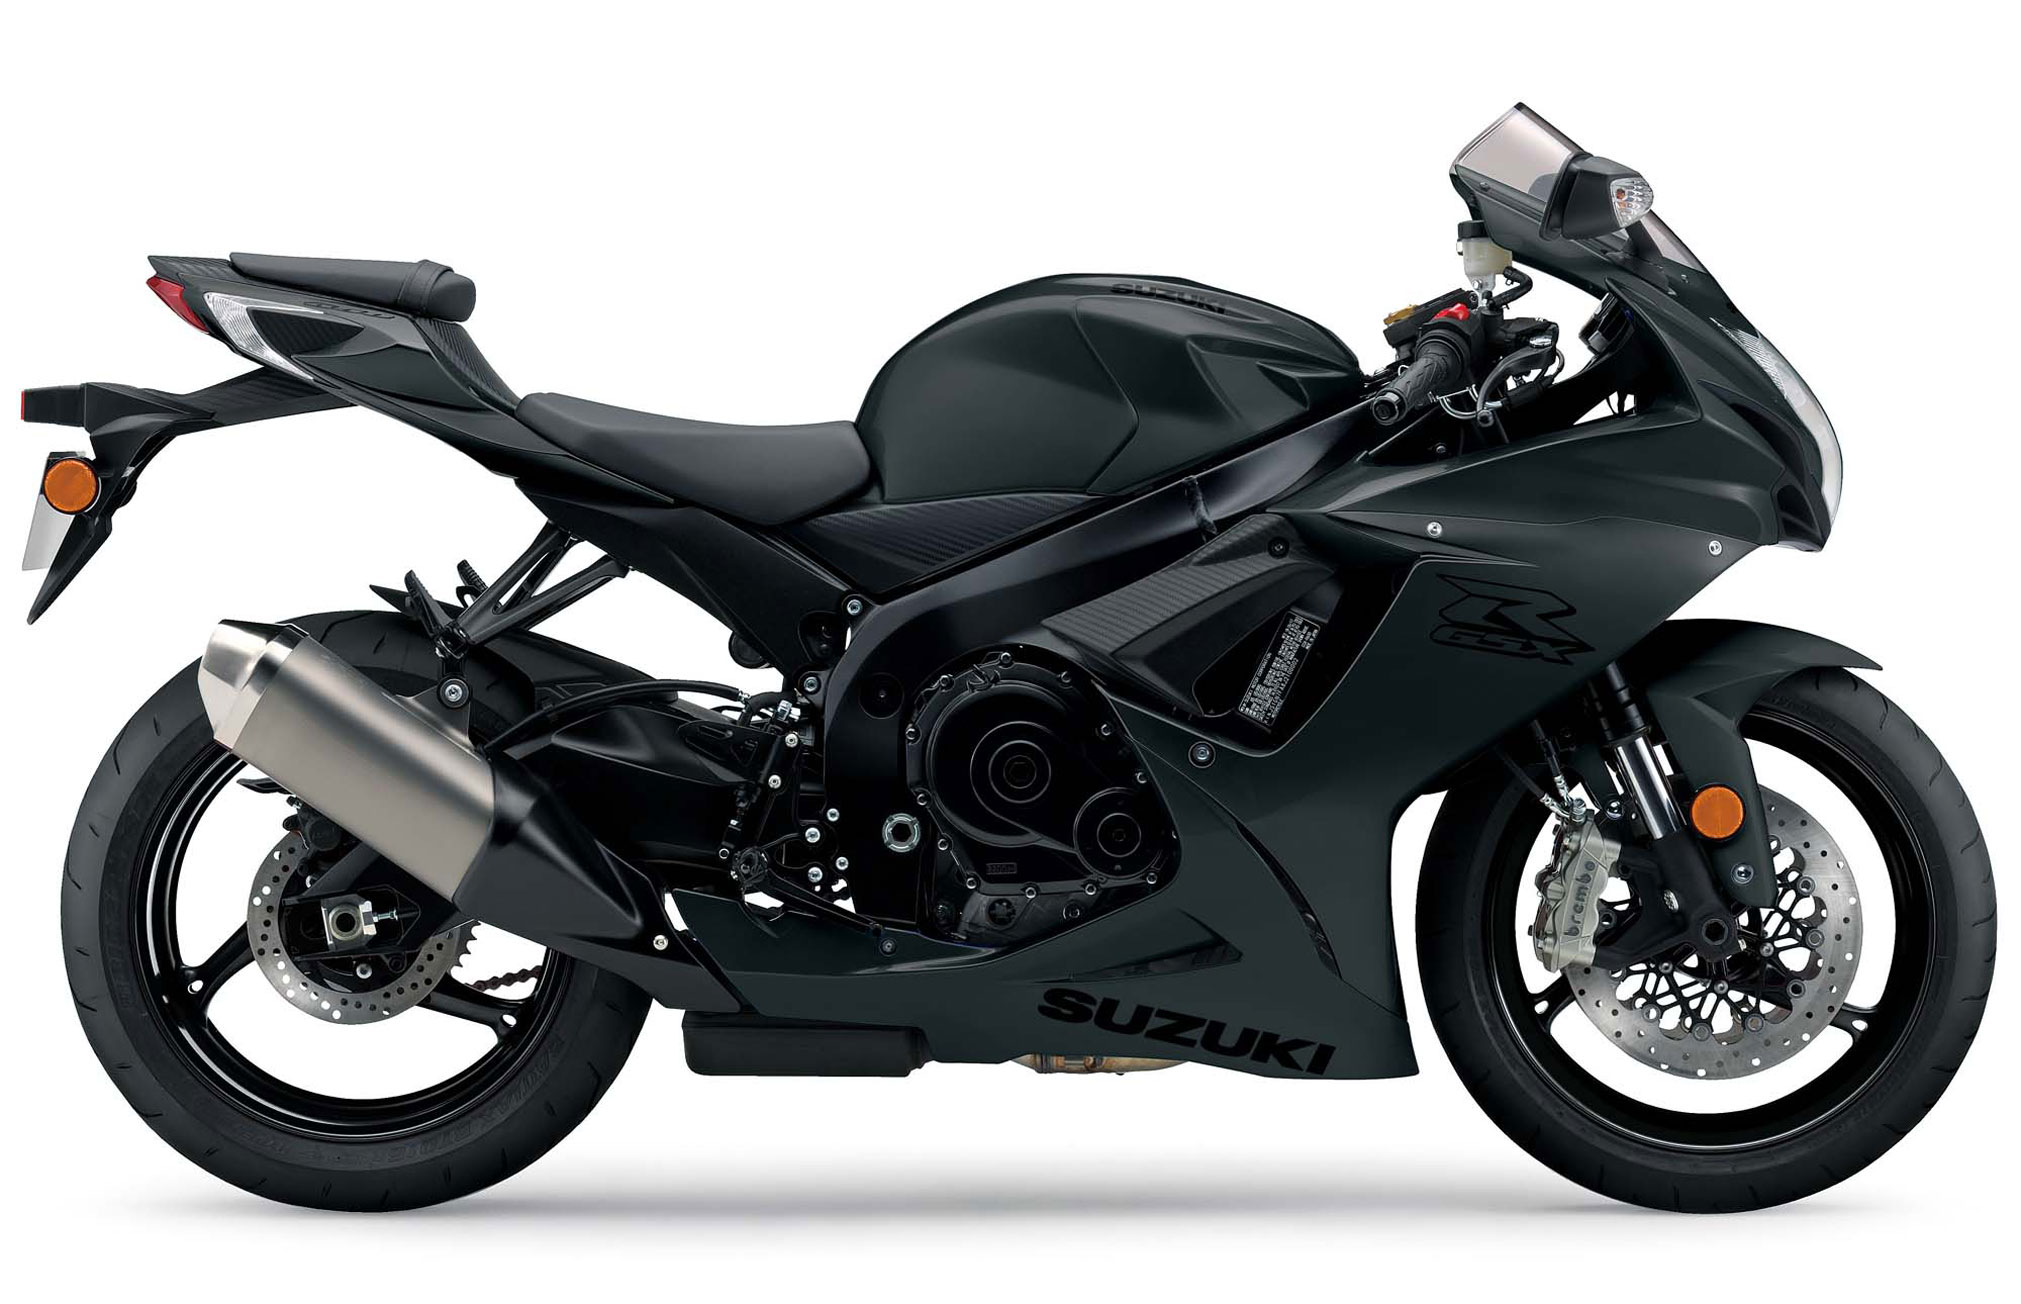 2021 Suzuki GSXR600 Guide • Total Motorcycle